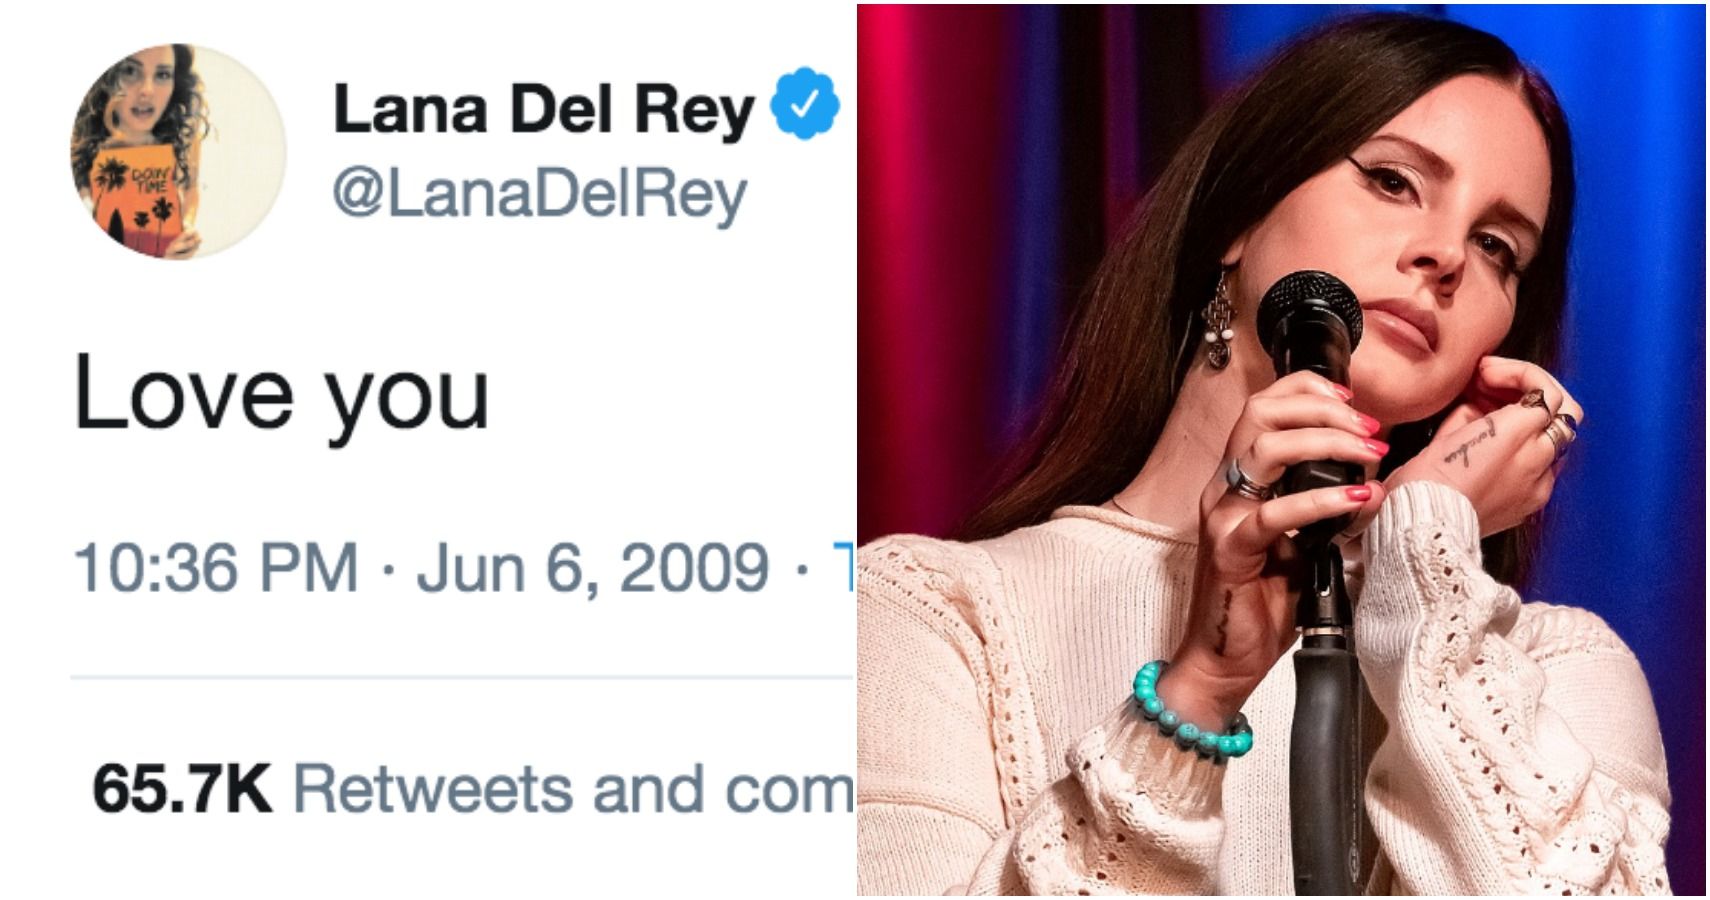 Os 10 melhores tweets de Lana Del Rey